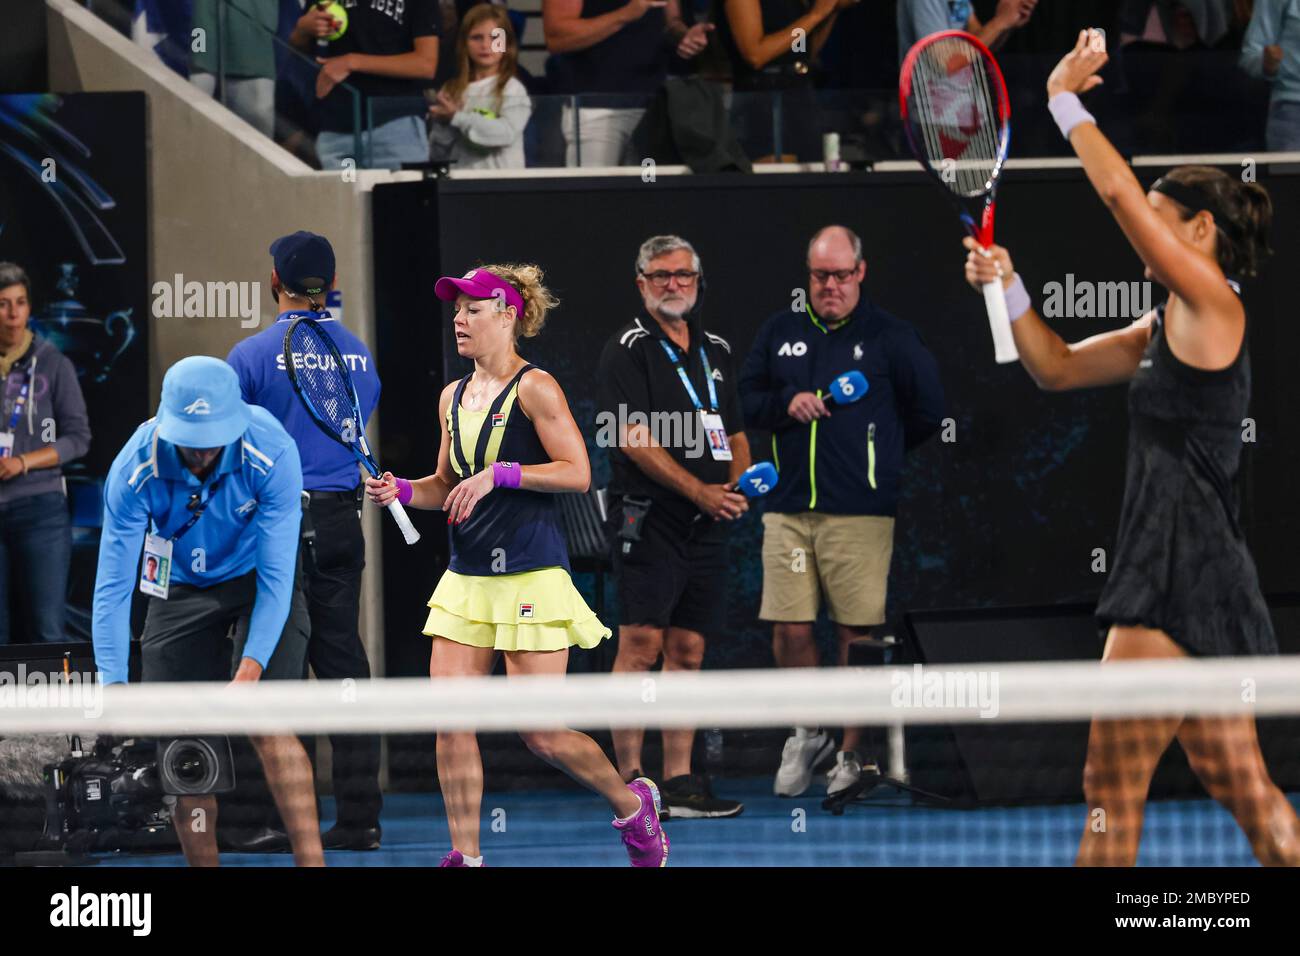 Tennis: Grand Slam - Australian Open, Einzel, Damen, 3. Runde: Siegemund (Deutschland) - Garcia (Frankreich). Laura Siegemund (l) reagiert enttäuscht. Stock Photo